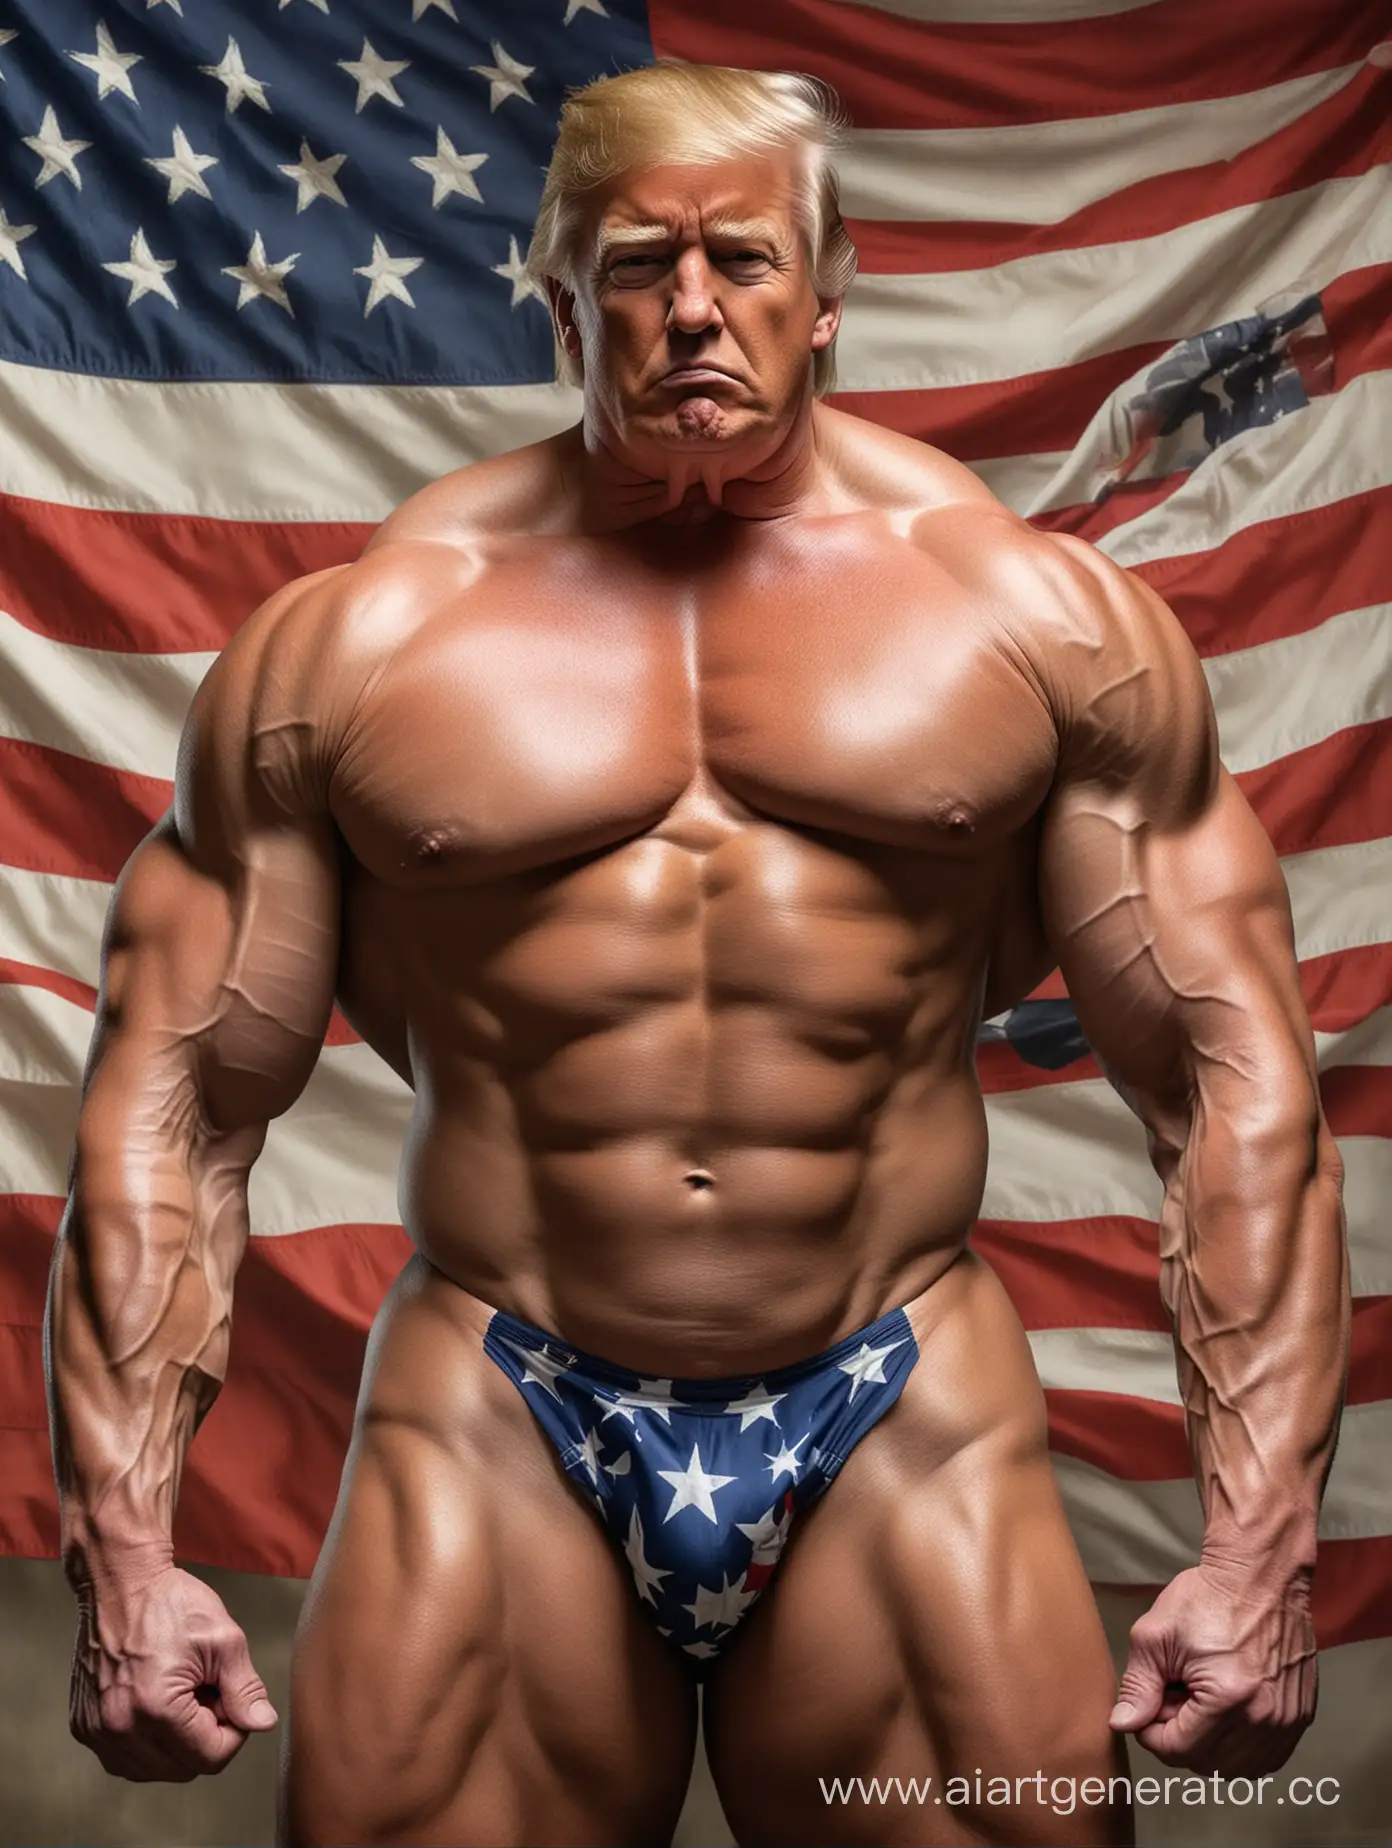 Большой, накаченный Дональд Трамп без одежды, с большими мышцами, большими бицепсами, трицепса и, в стрингах в виде американского флага. На фоне огромный американский флаг и орел